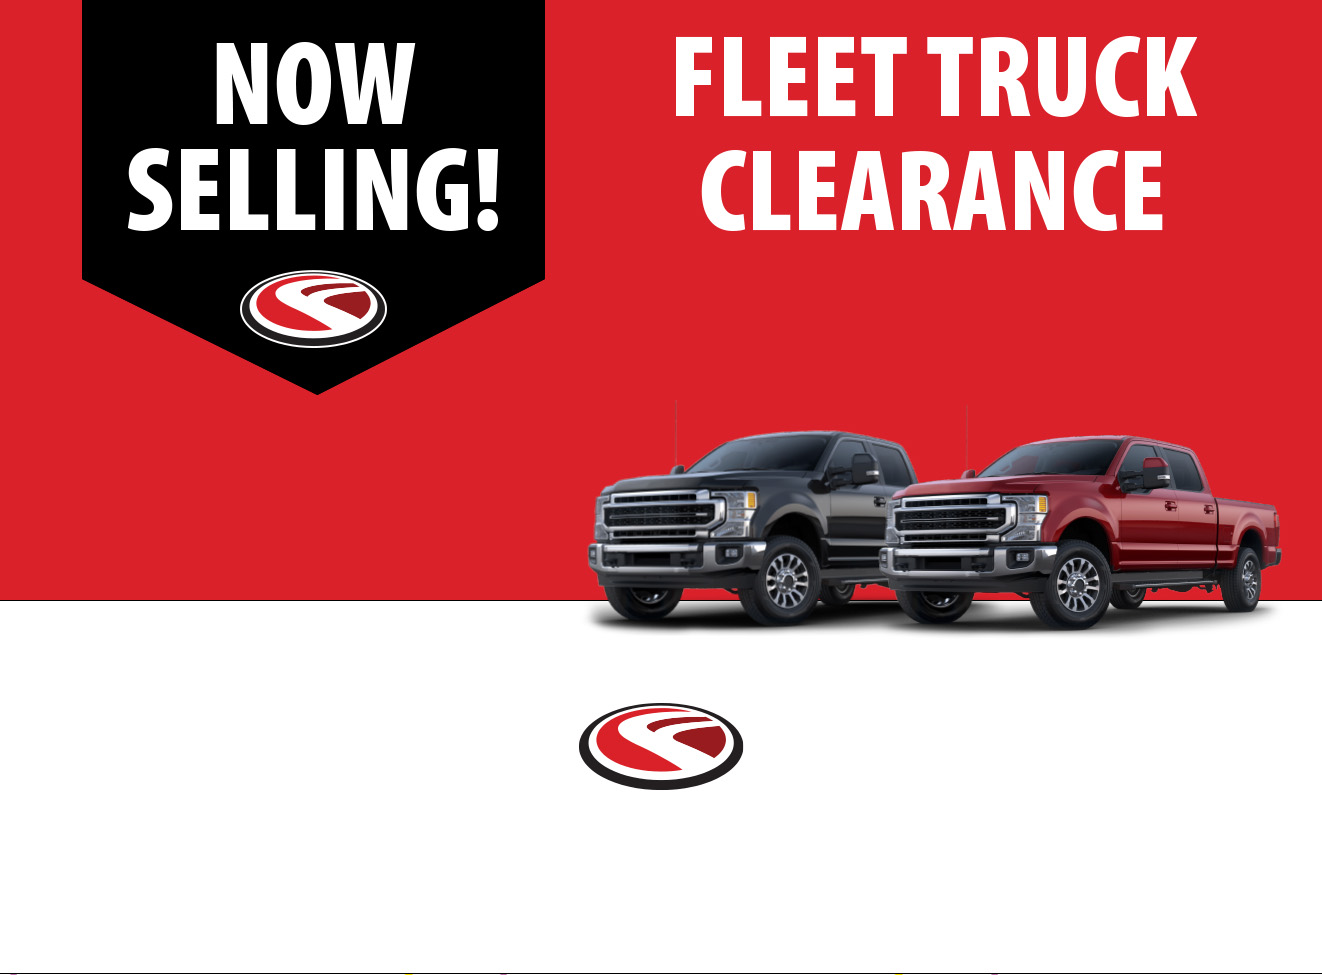 truck-fleet-clearance